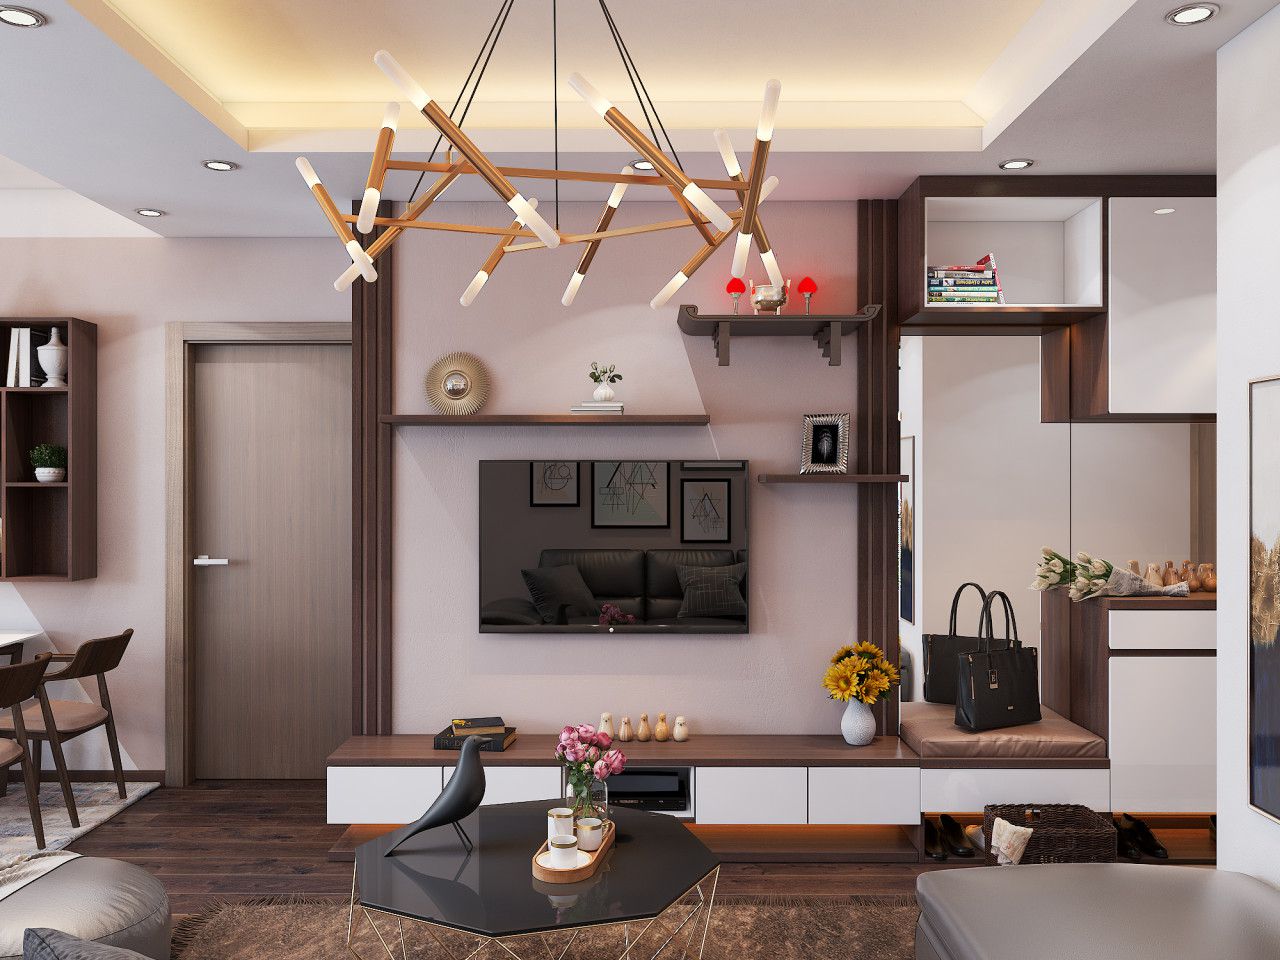 Hanoi apartment interior design